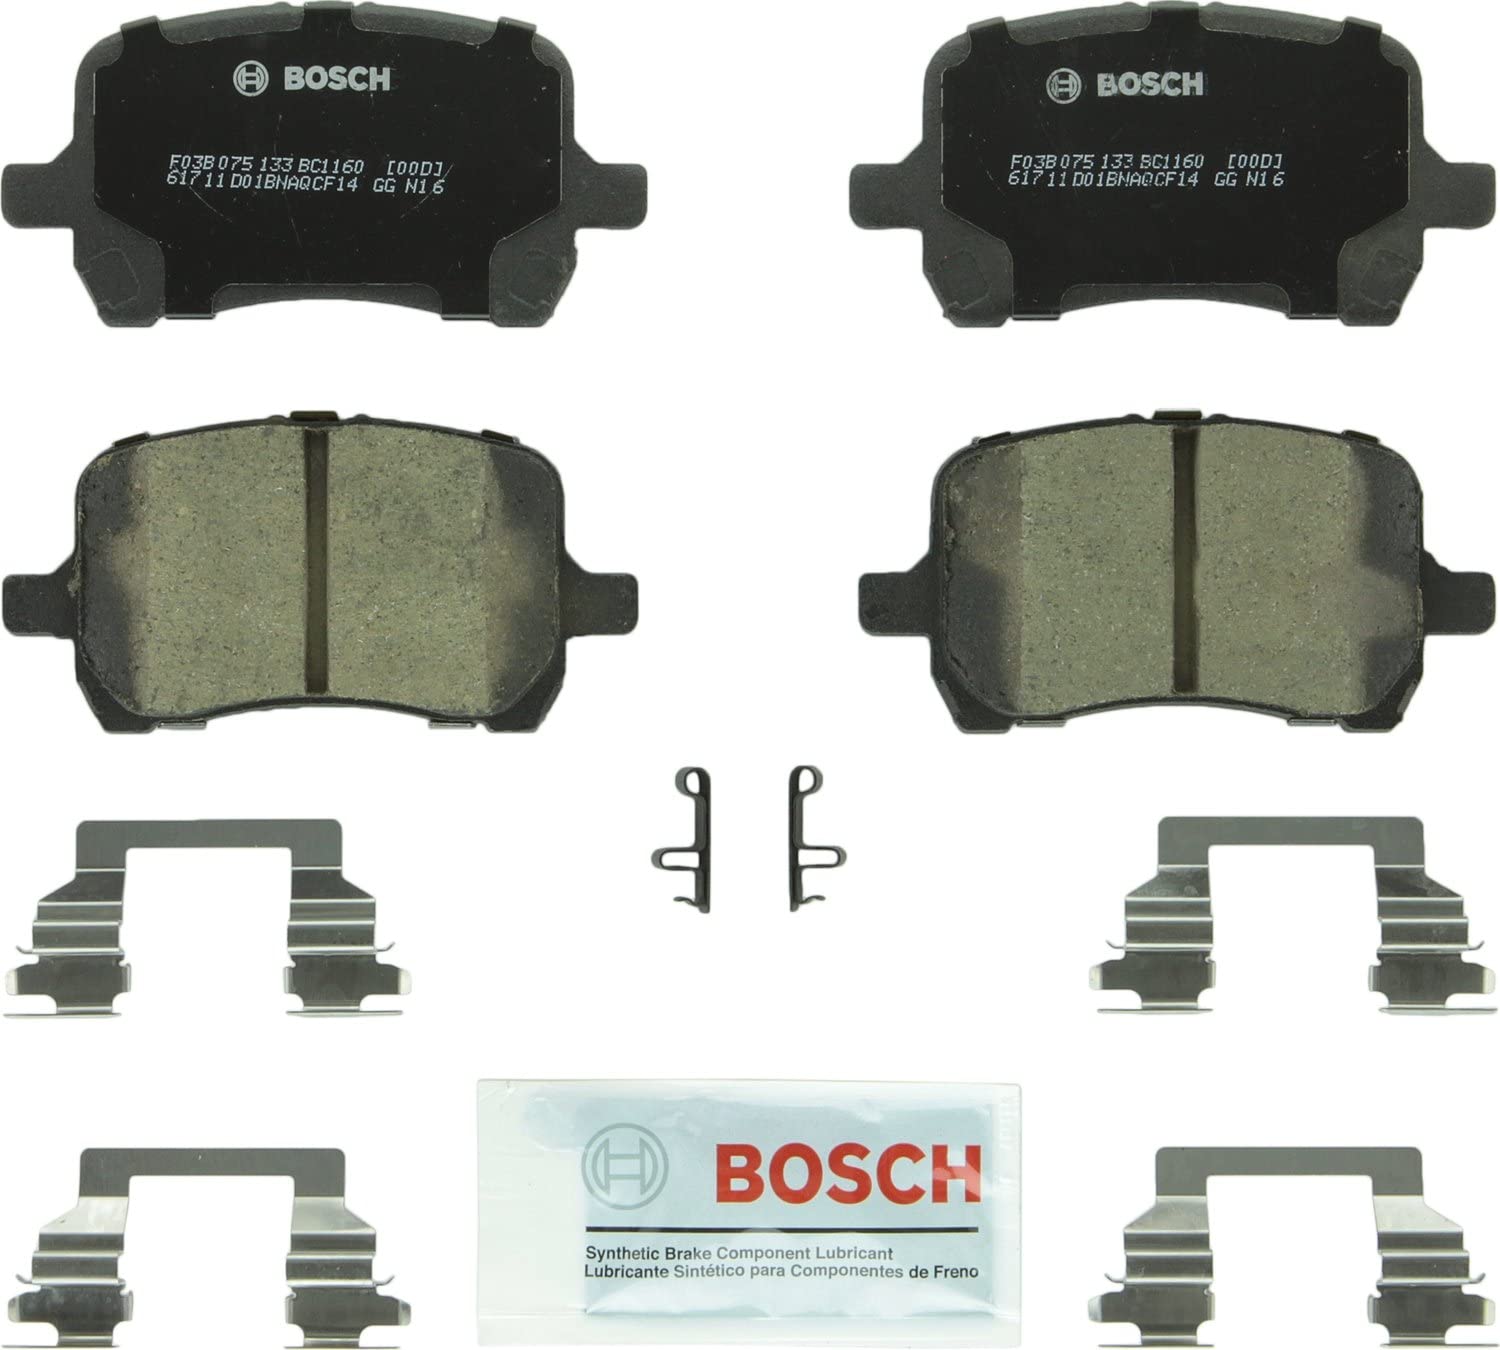 Bosch BC1160 QuietCast Premium Ceramic Disc Brake Pad Set For: Chevrolet Cobalt, HHR, Malibu; Pontiac G5, G6; Saturn Aura, Front